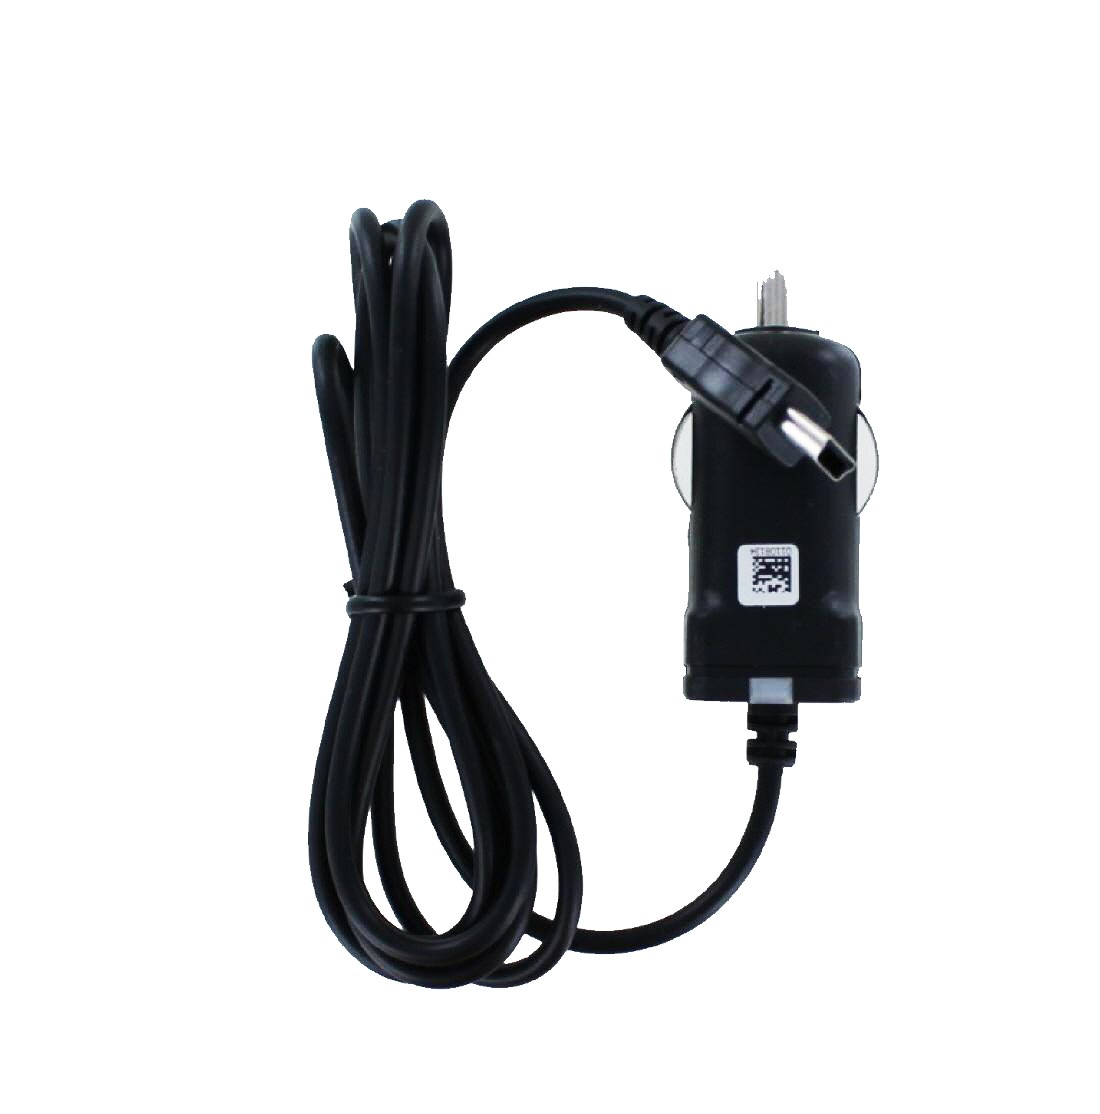 MOBILOTEC Ladekabel mit kompatibel schwarz Volt, Garmin nüvi Garmin, 2597LMT Netzteil/Ladegerät 5